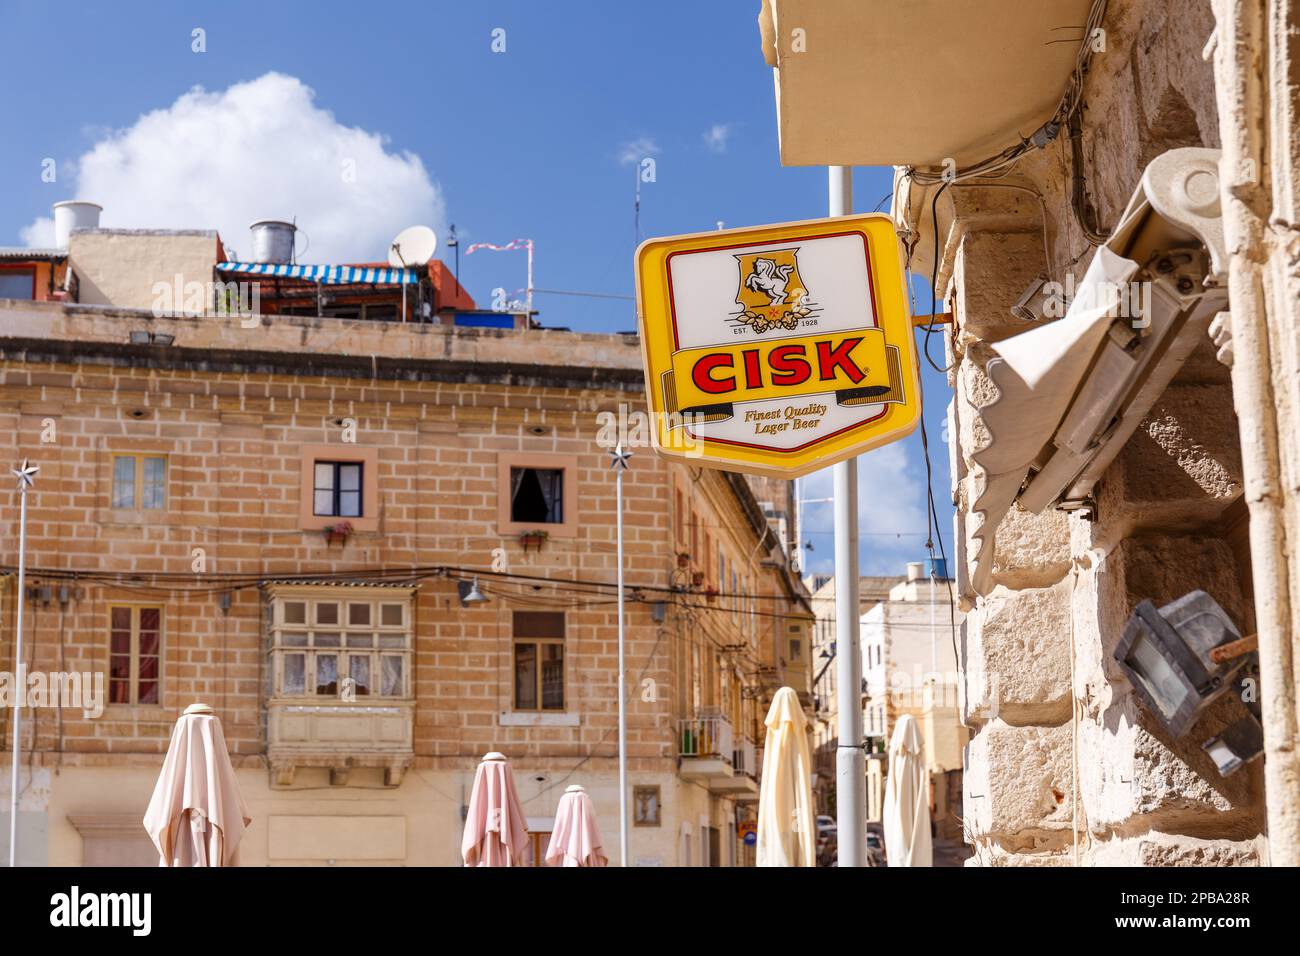 BIRQU, MALTA - SEPTEMBER 11, 2017: Cisk beer brand signage in the streets of Birqu, Malta in September 2017. Stock Photo